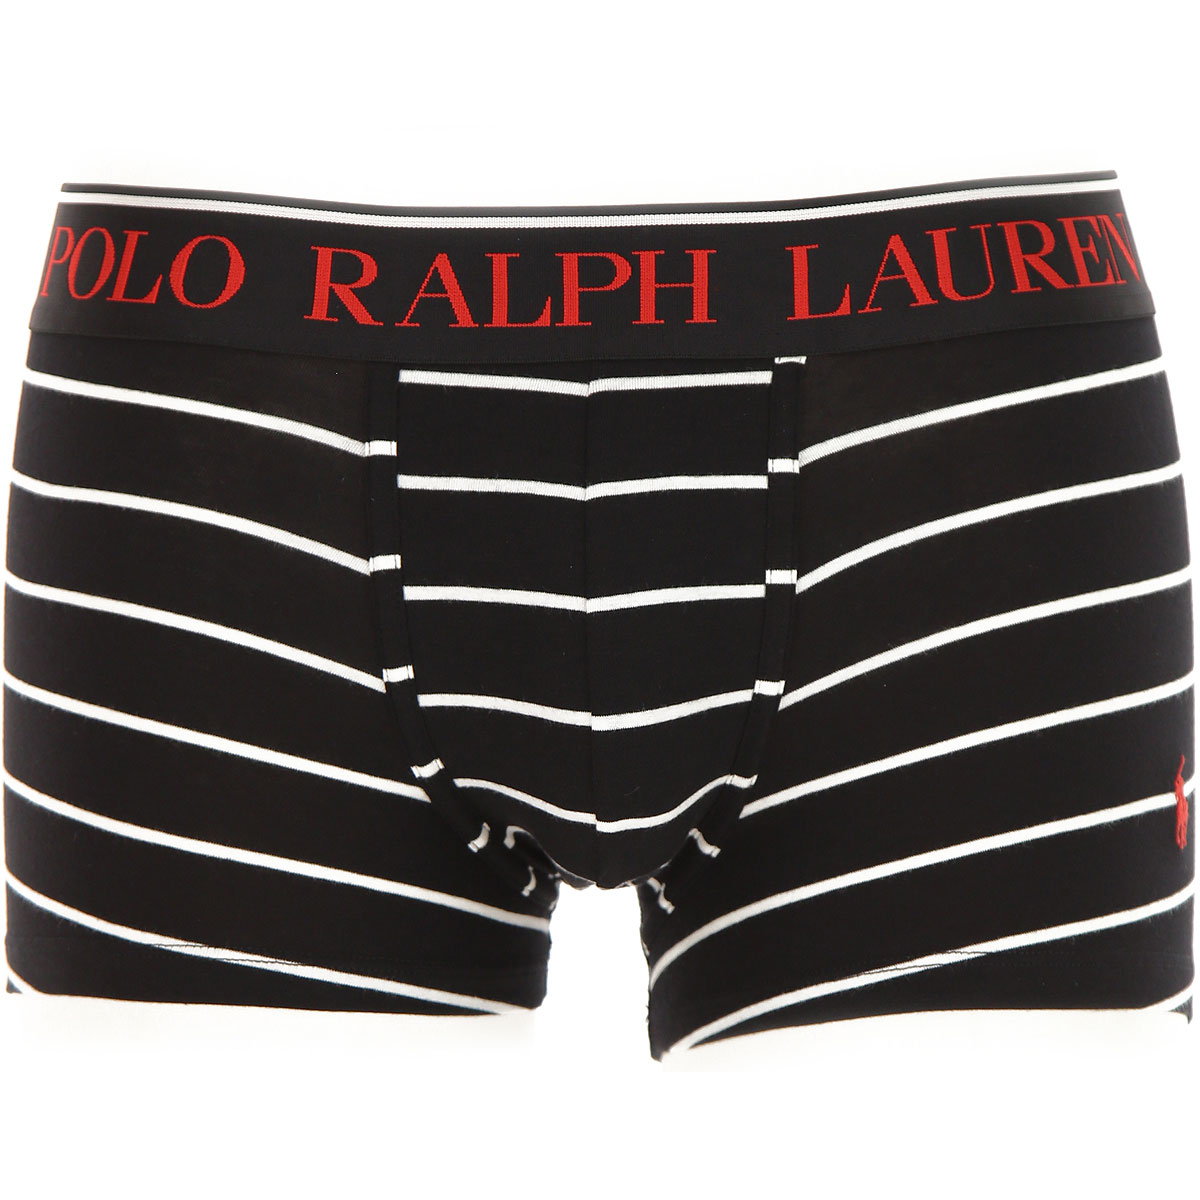 Ralph Lauren Boxer Shorts für Herren, Unterhose, Short, Boxer Günstig im Sale, 2 Pack, Schwarz, Baumwolle, 2017, L M S XL